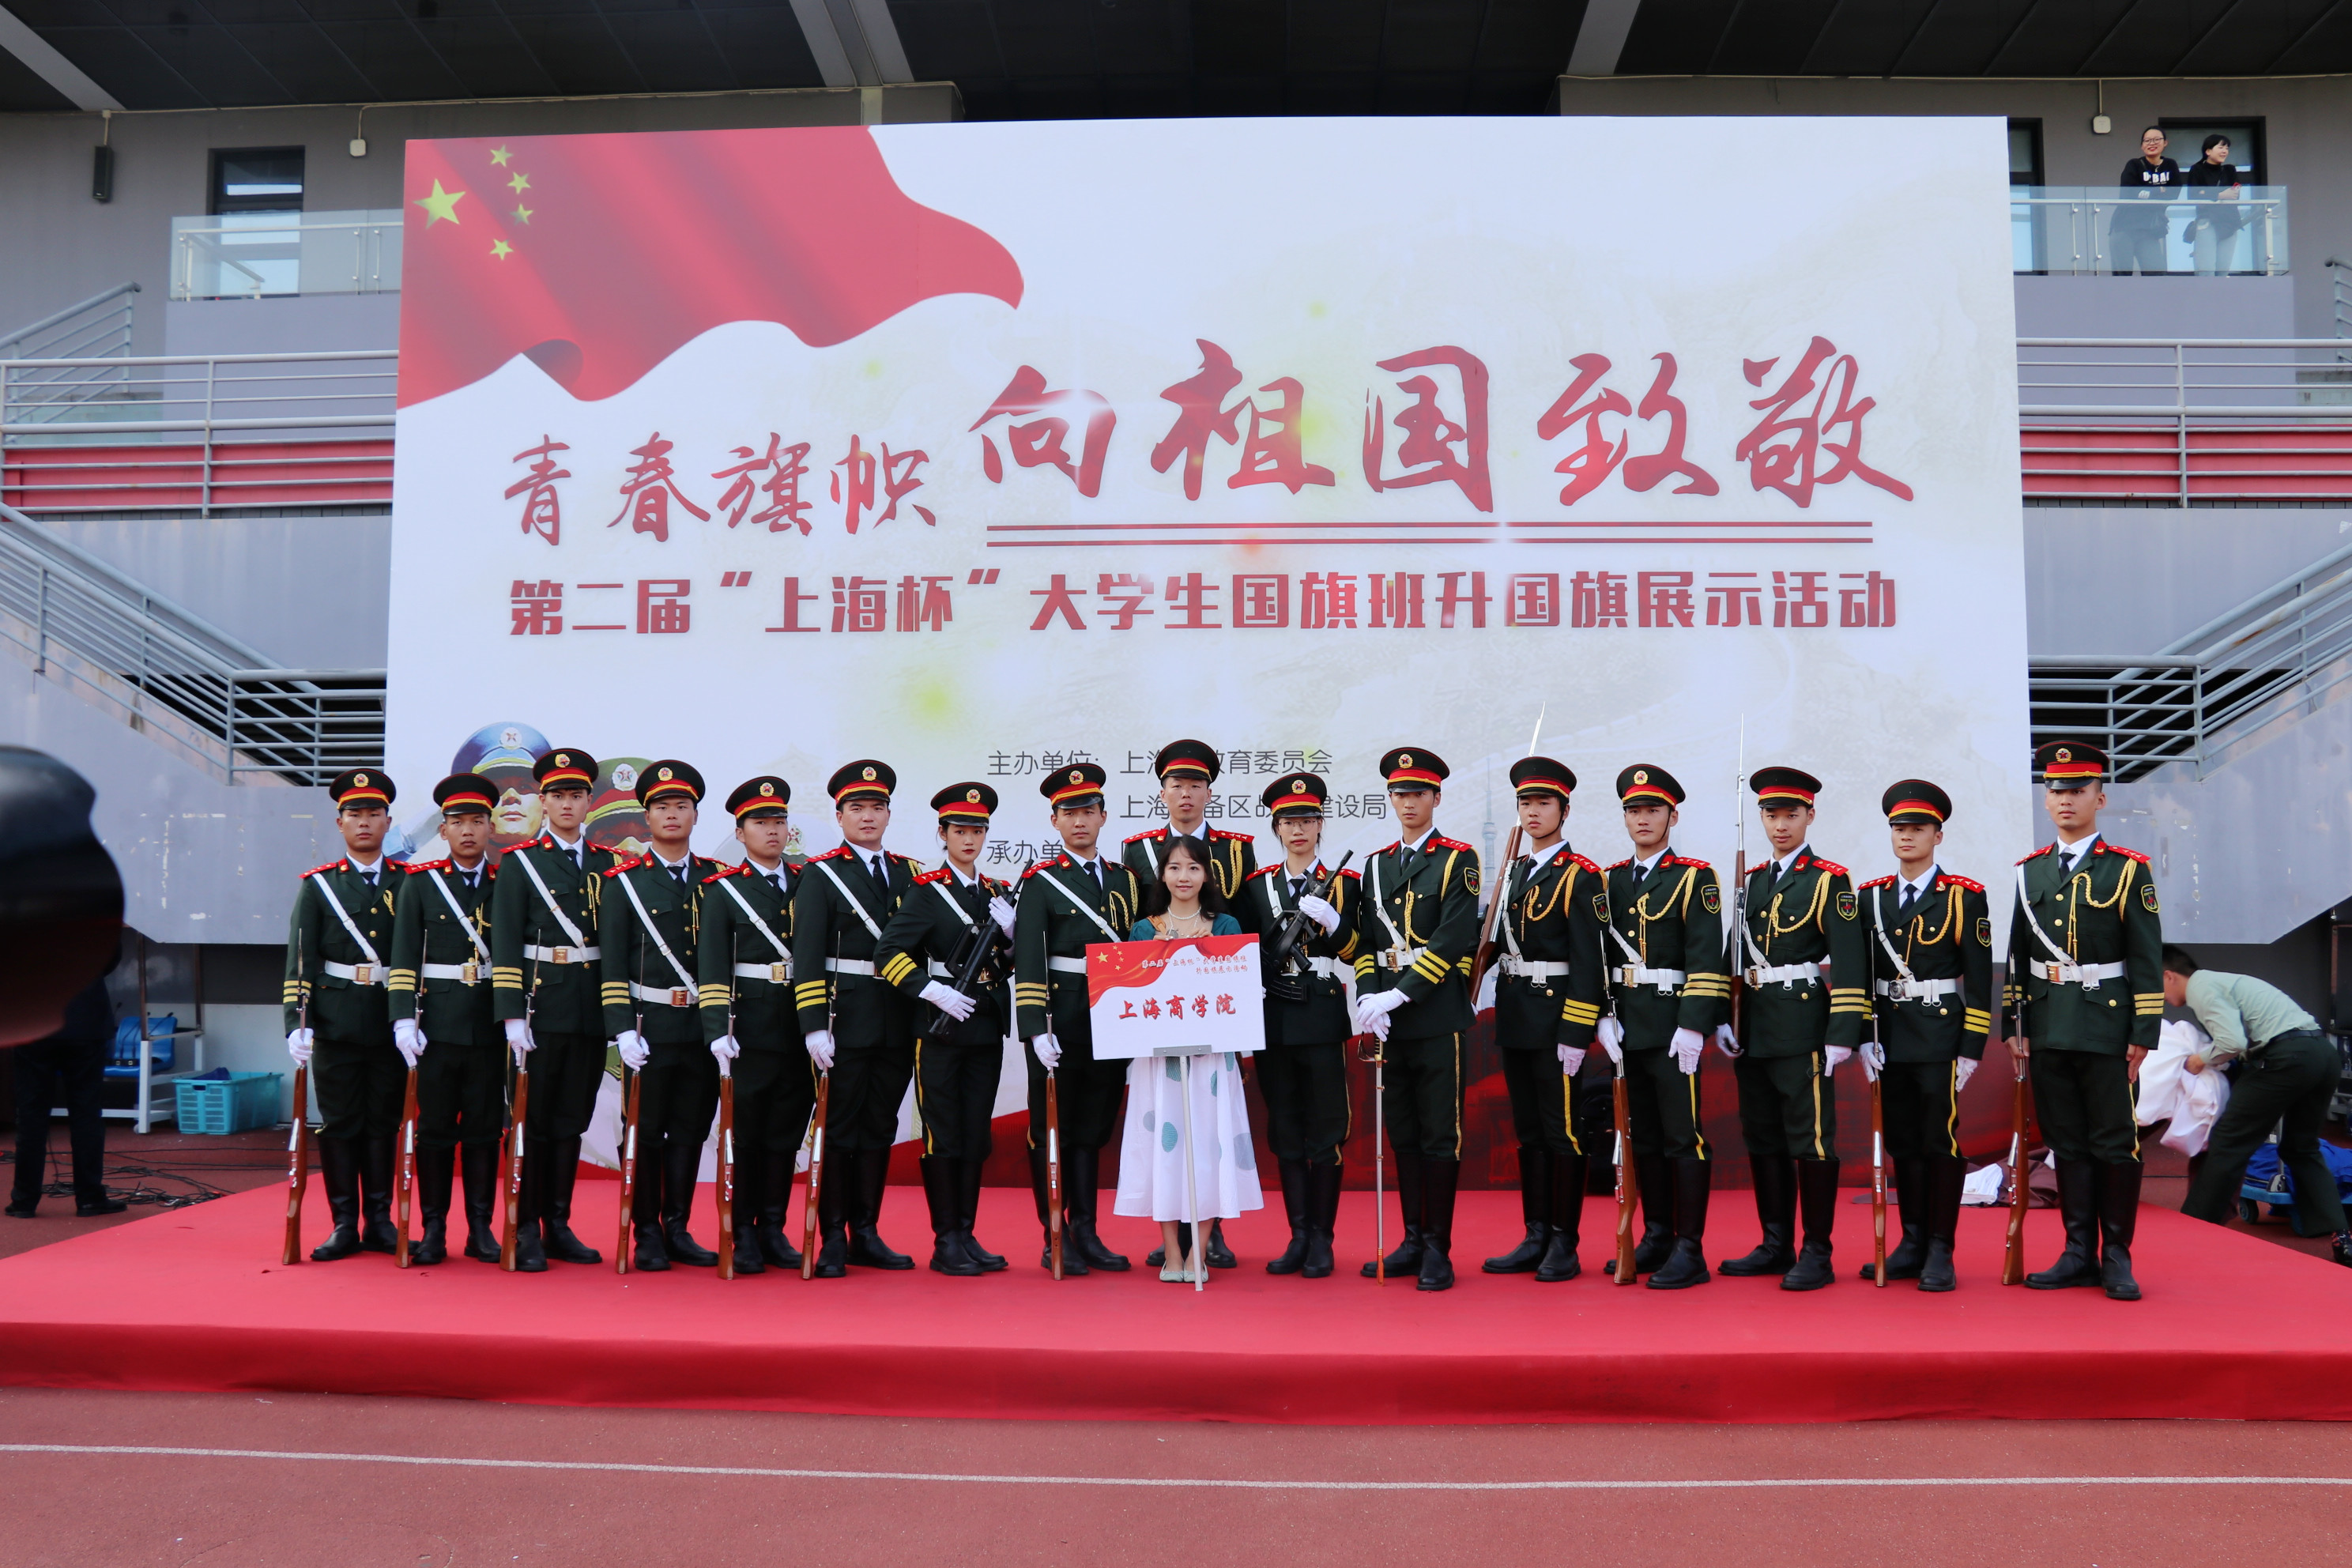 武装青年团在第二届“上海杯”大学生国旗班升国旗展示活动现场